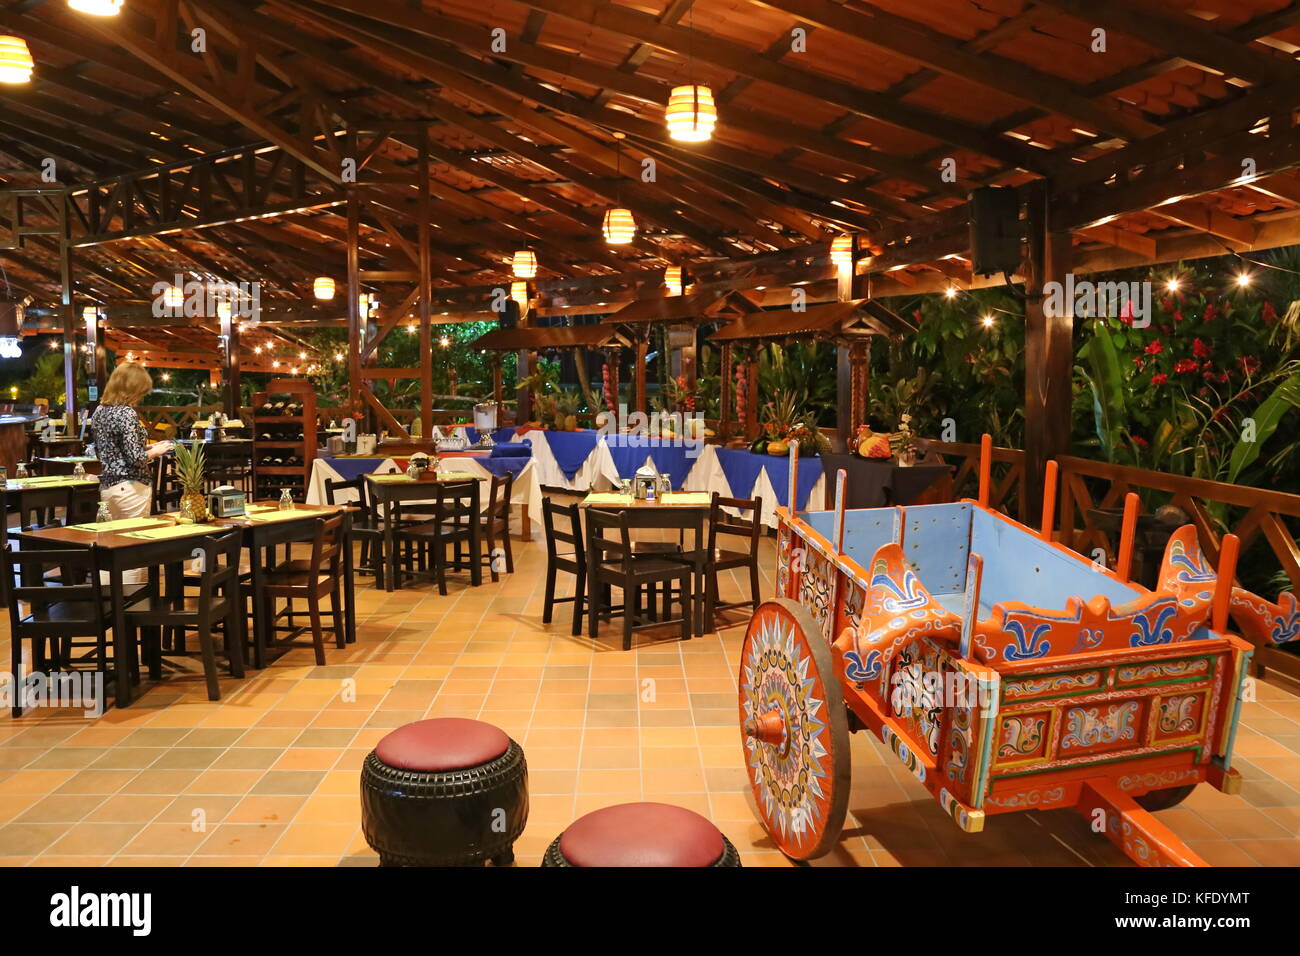 Oxcart at Hotel la Pradera del Arenal restaurant, Ruta 142, La Fortuna, Alajuela province, Costa Rica, Central America Stock Photo